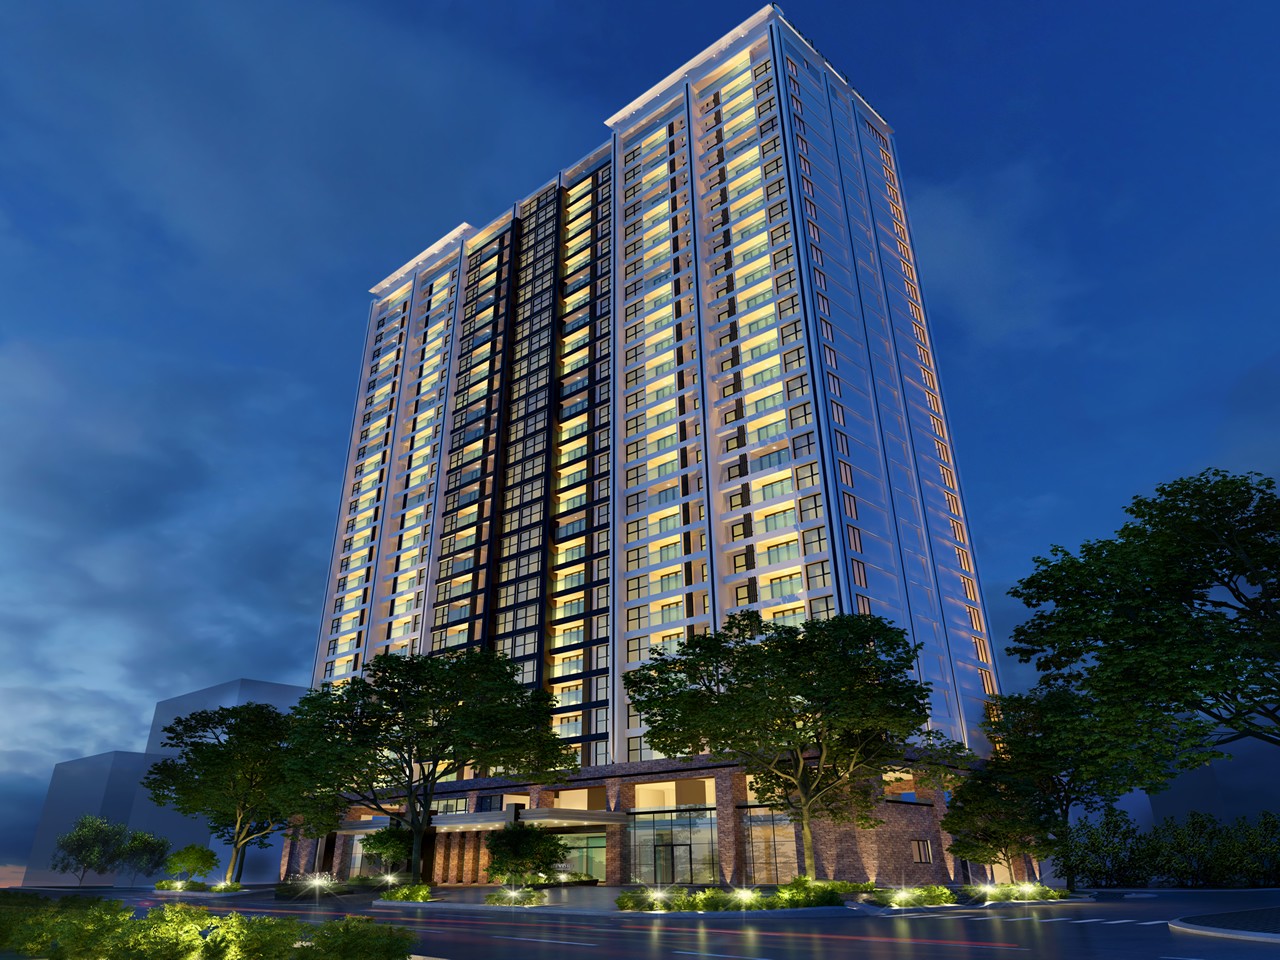 
Thành phố Đà Nẵng hấp dẫn nhà đầu tư vào các sản phẩm căn hộ, chung cư cao cấp.
